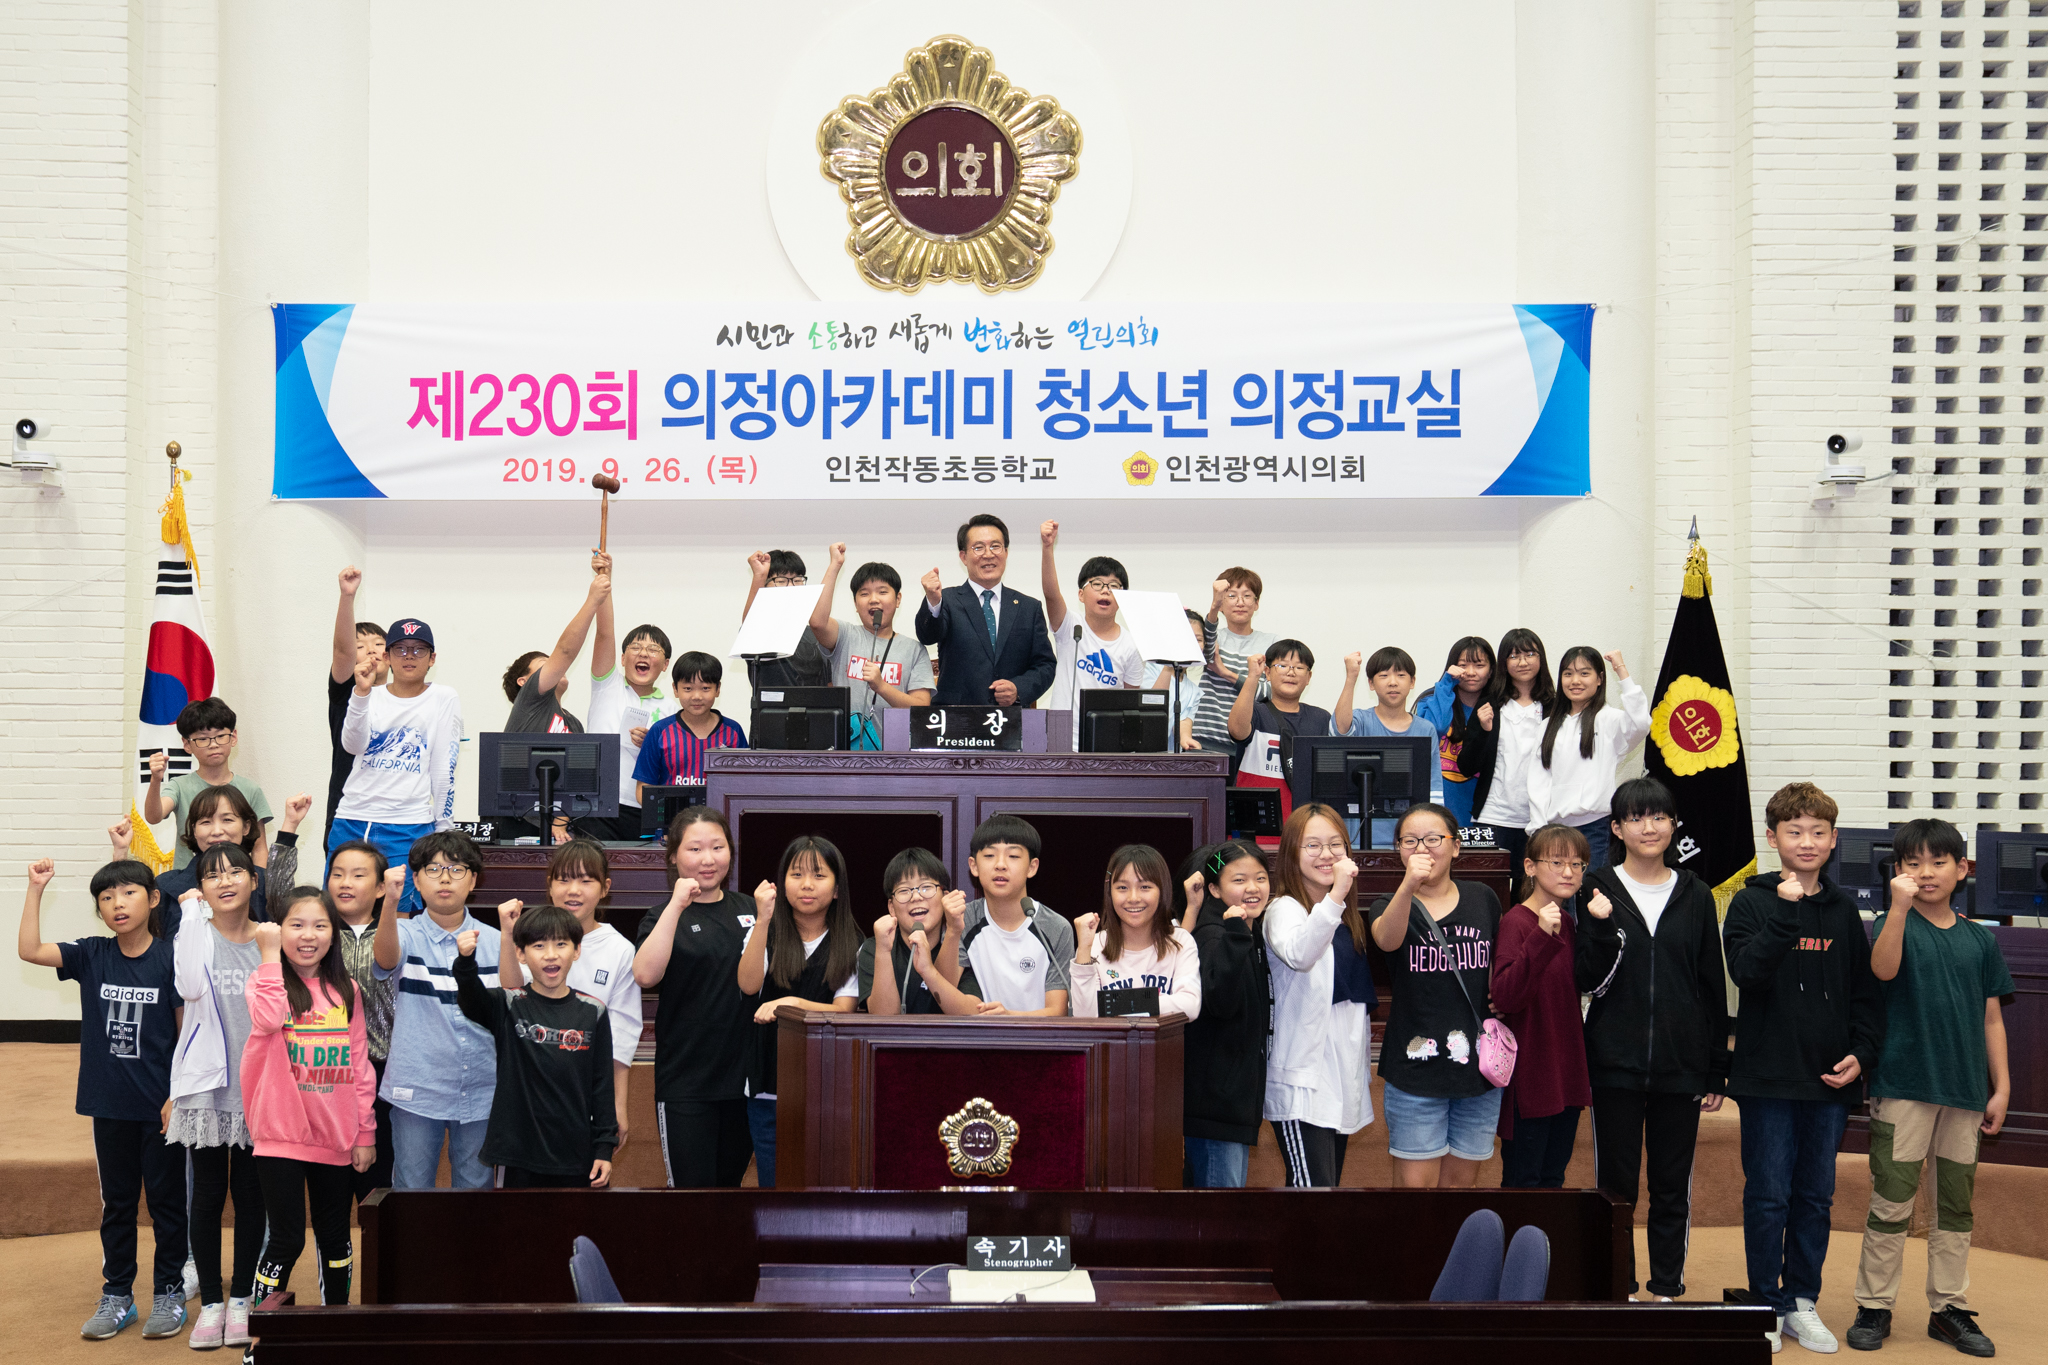 제230회 의정아카데미 청소년 의정교실_인천작동초등학교 사진